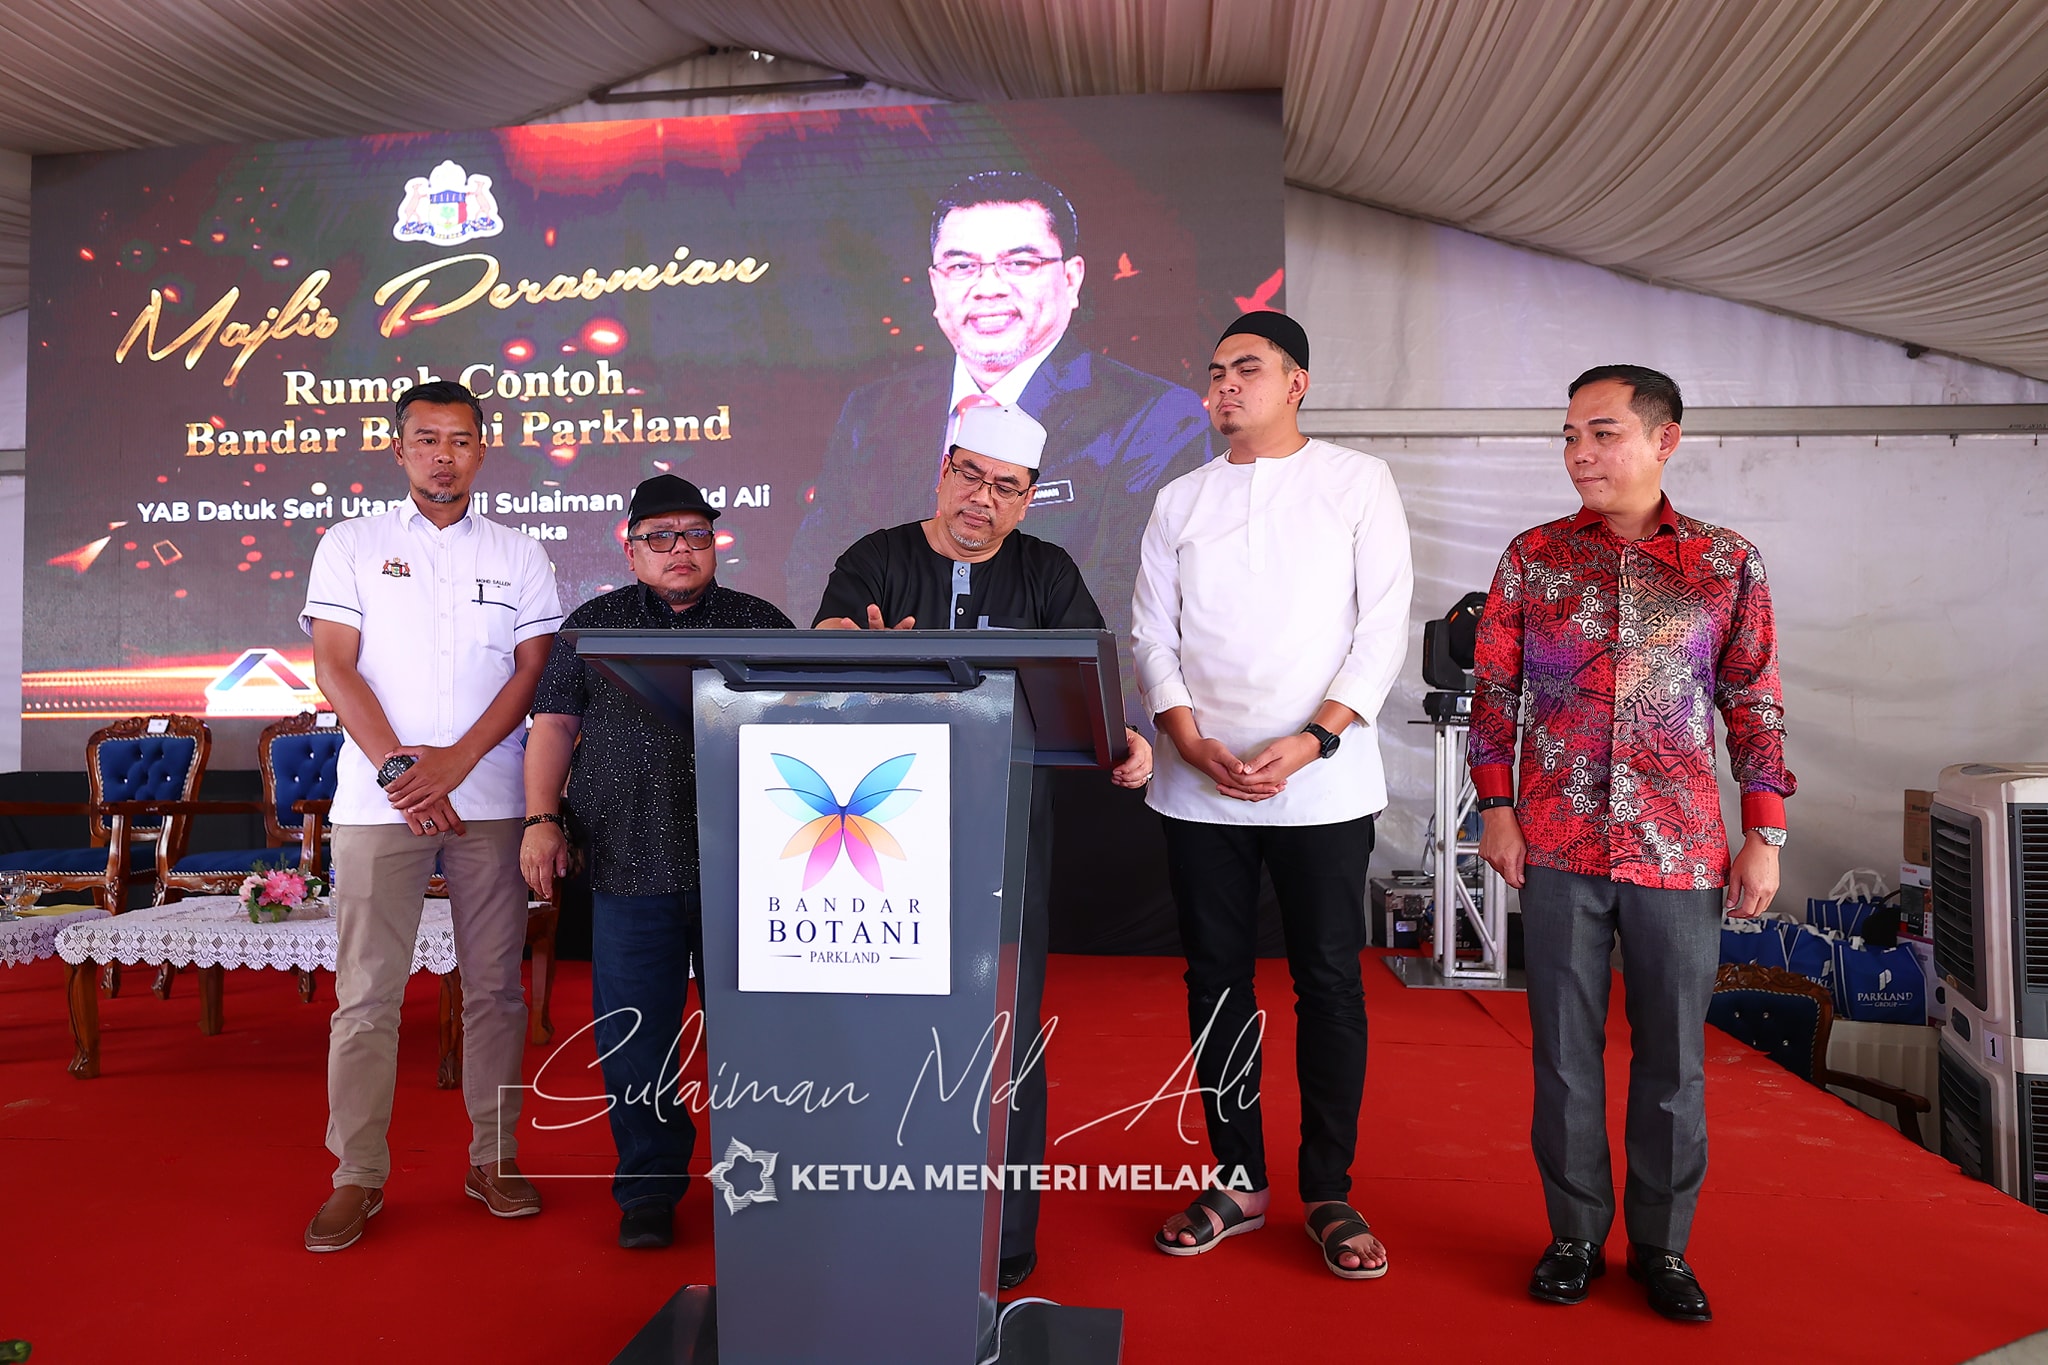 Majlis Perasmian Rumah Contoh Bandar Botani Parkland Fasa 2, Jasin, Melaka telah disempurnakan oleh YAB Datuk Seri Utama Haji Sulaiman Bin Md. Ali, Ketua Menteri Melaka pada 25 September 2022.